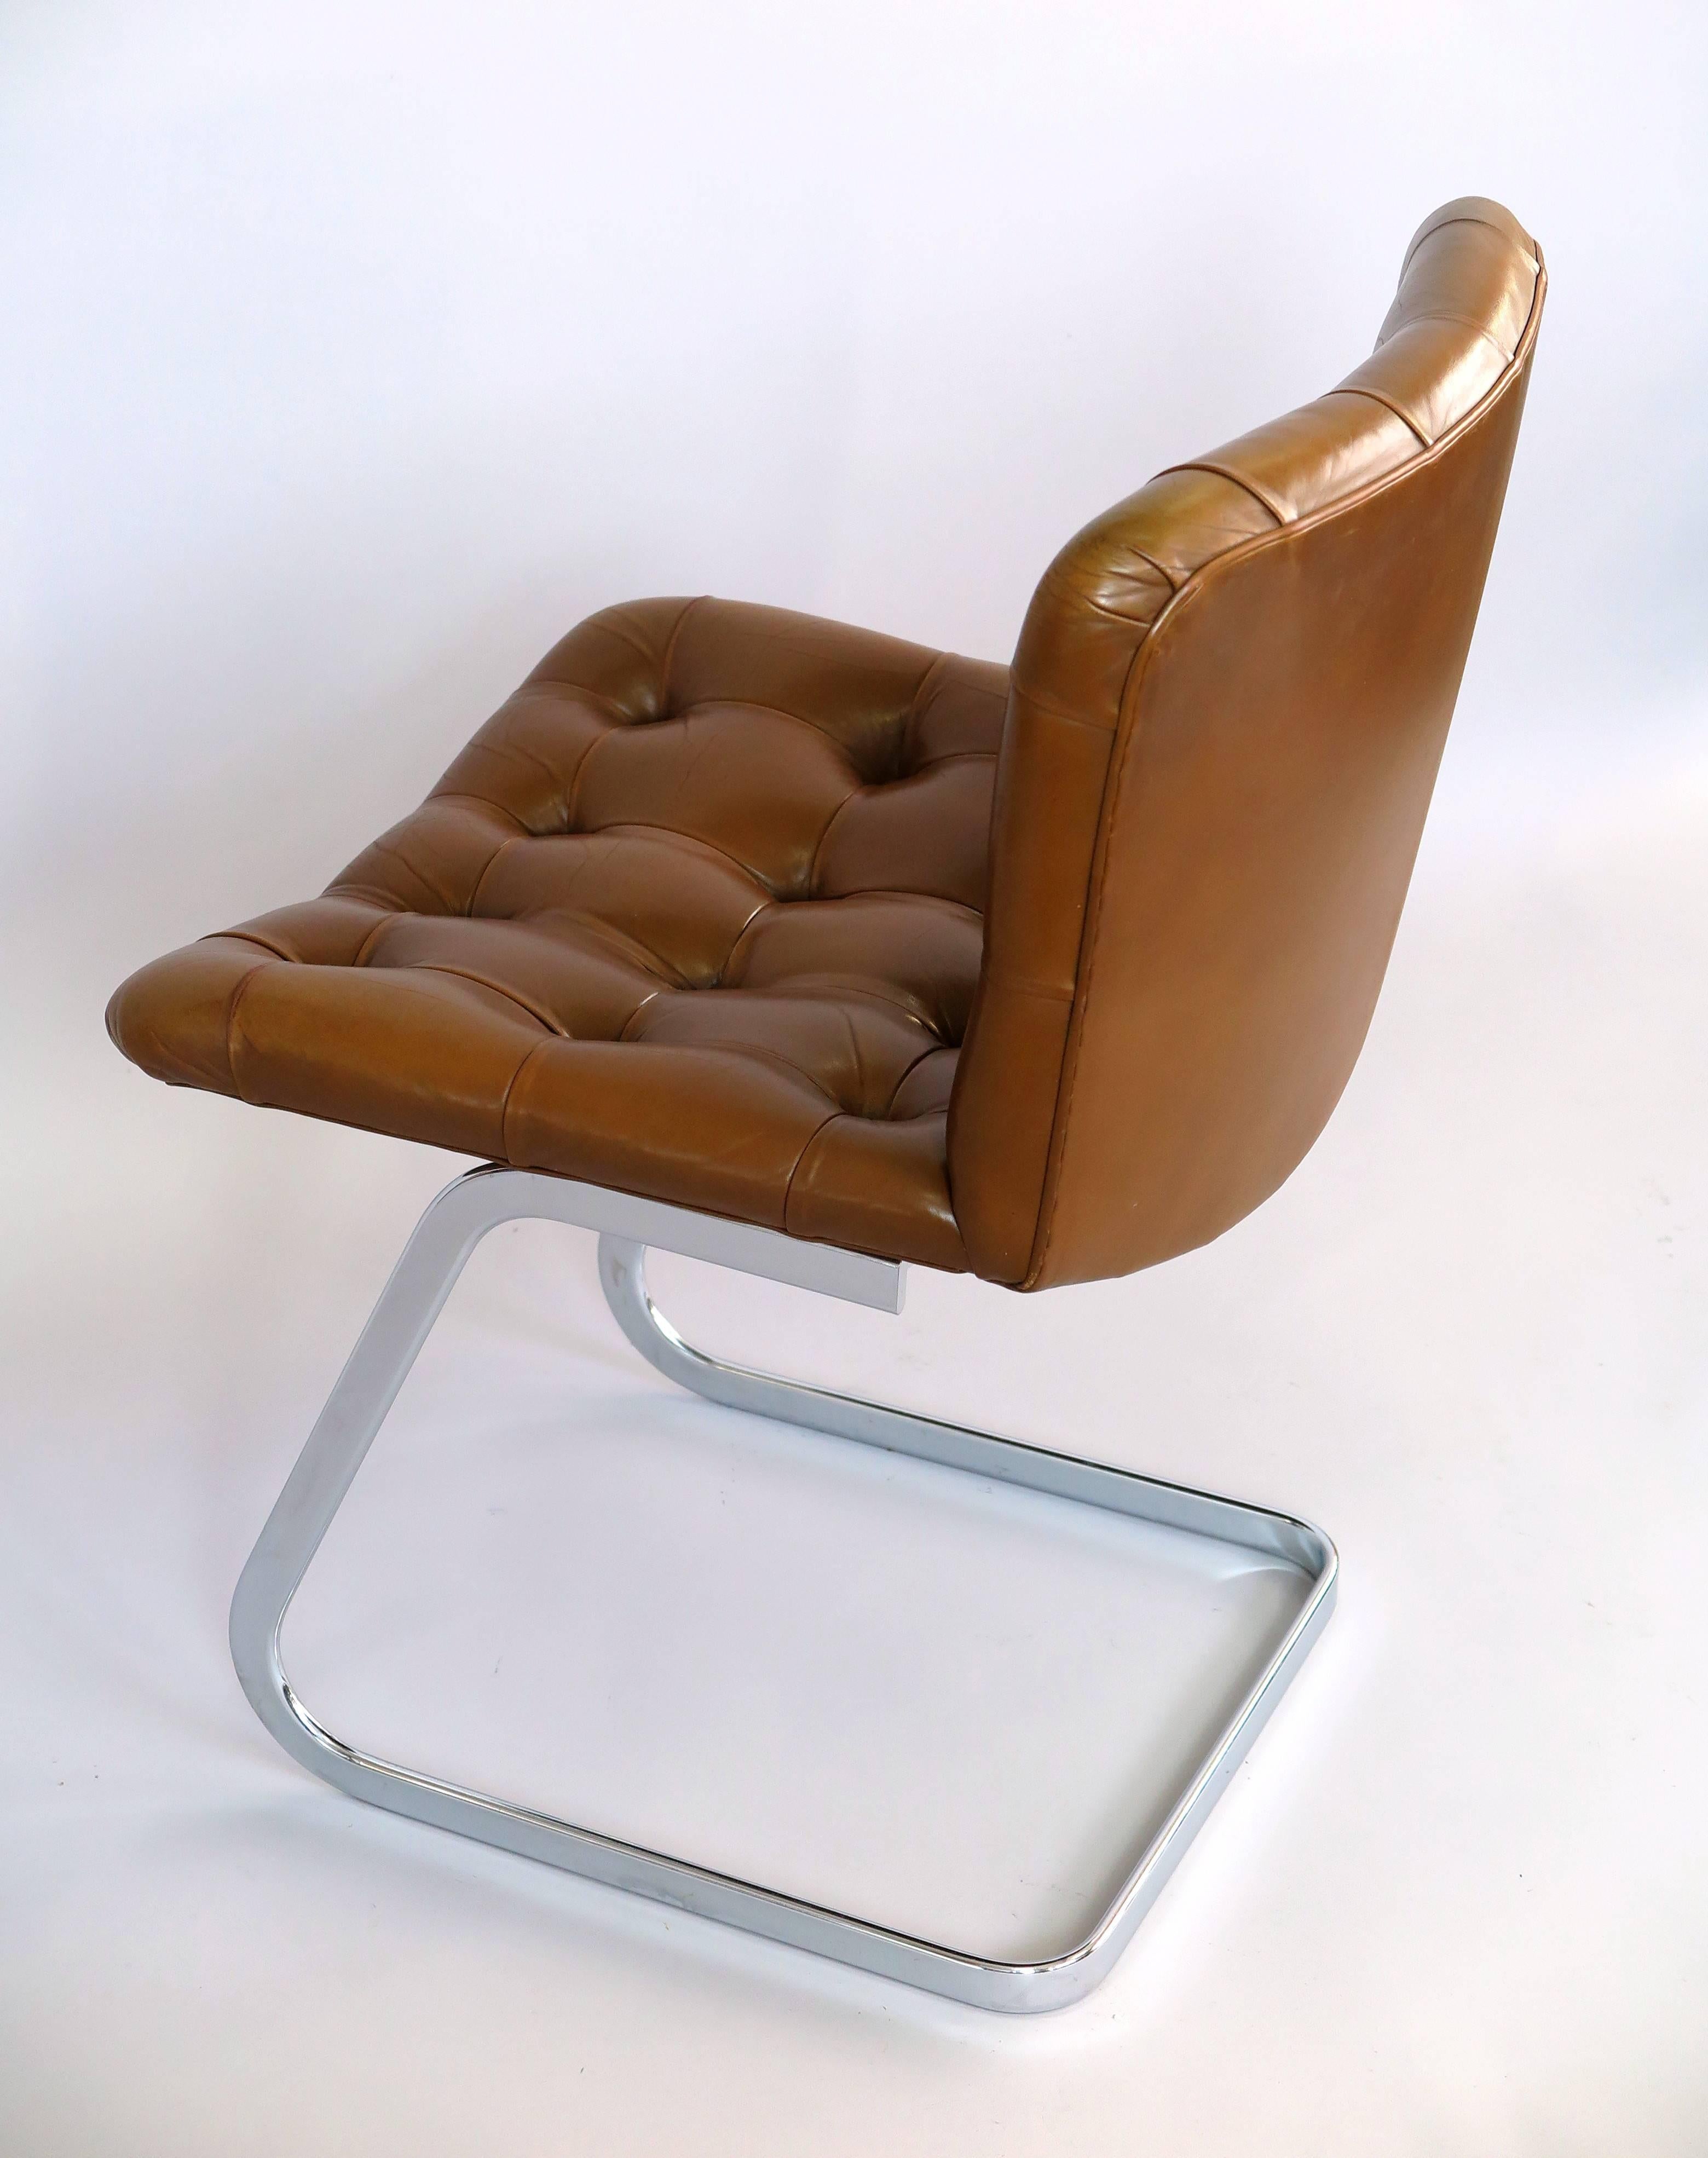 Swiss Set of Four comfortable UNESCO Chairs by Robert Haussmann, 1960s